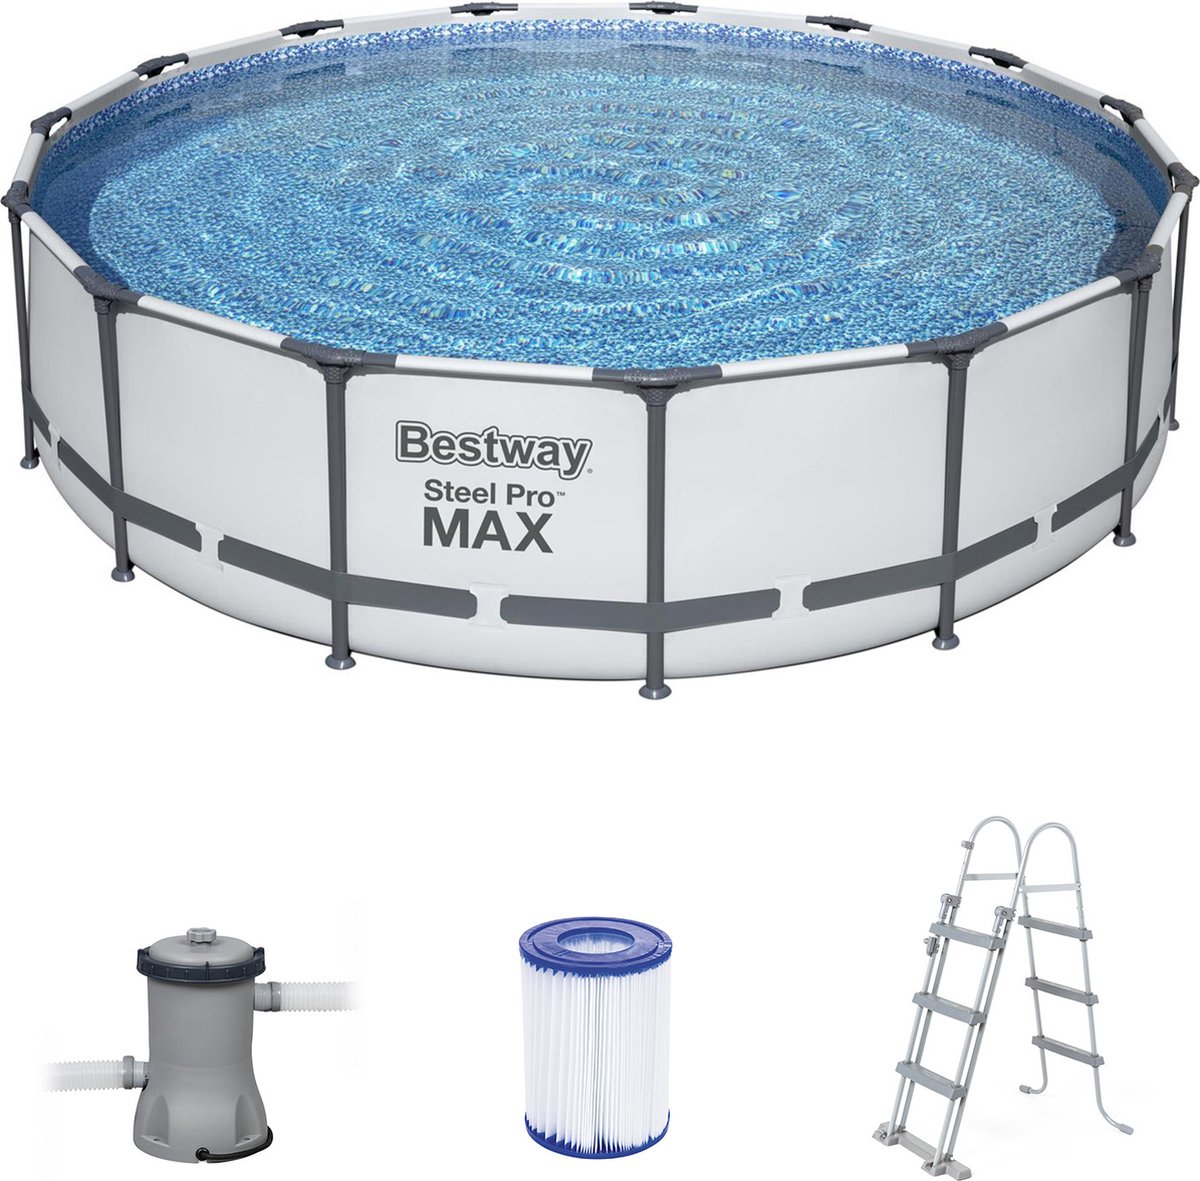 Bestway Steel Pro Max Tubular Bovengronds Zwembad 457x107cm 3028 L / H Cartridge Scrubber Zeildoek En Ladder - Grijs